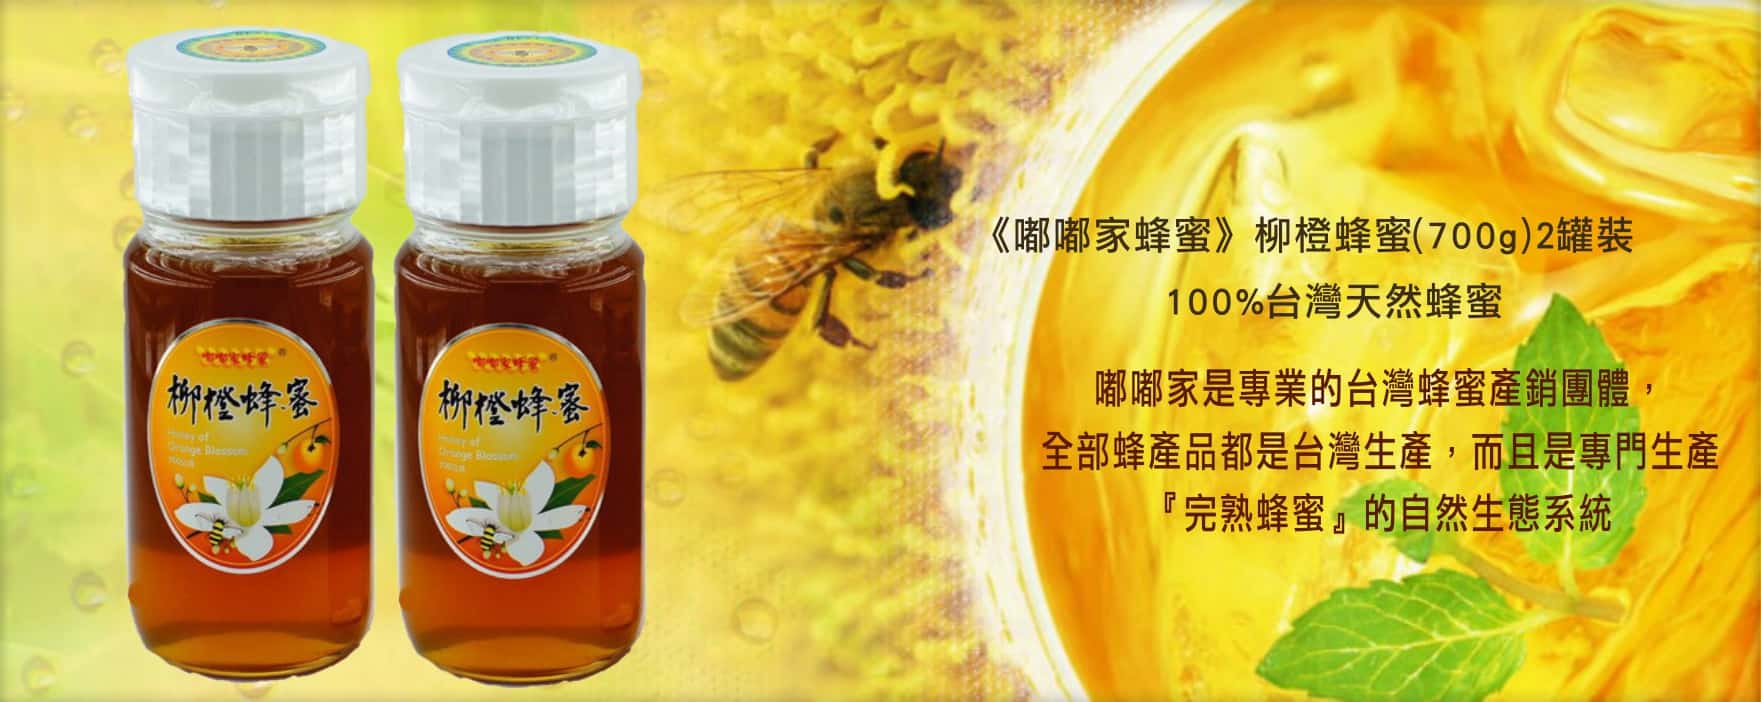 《嘟嘟家蜂蜜》柳橙蜂蜜~(700g)2罐裝~100%台灣天然蜂蜜